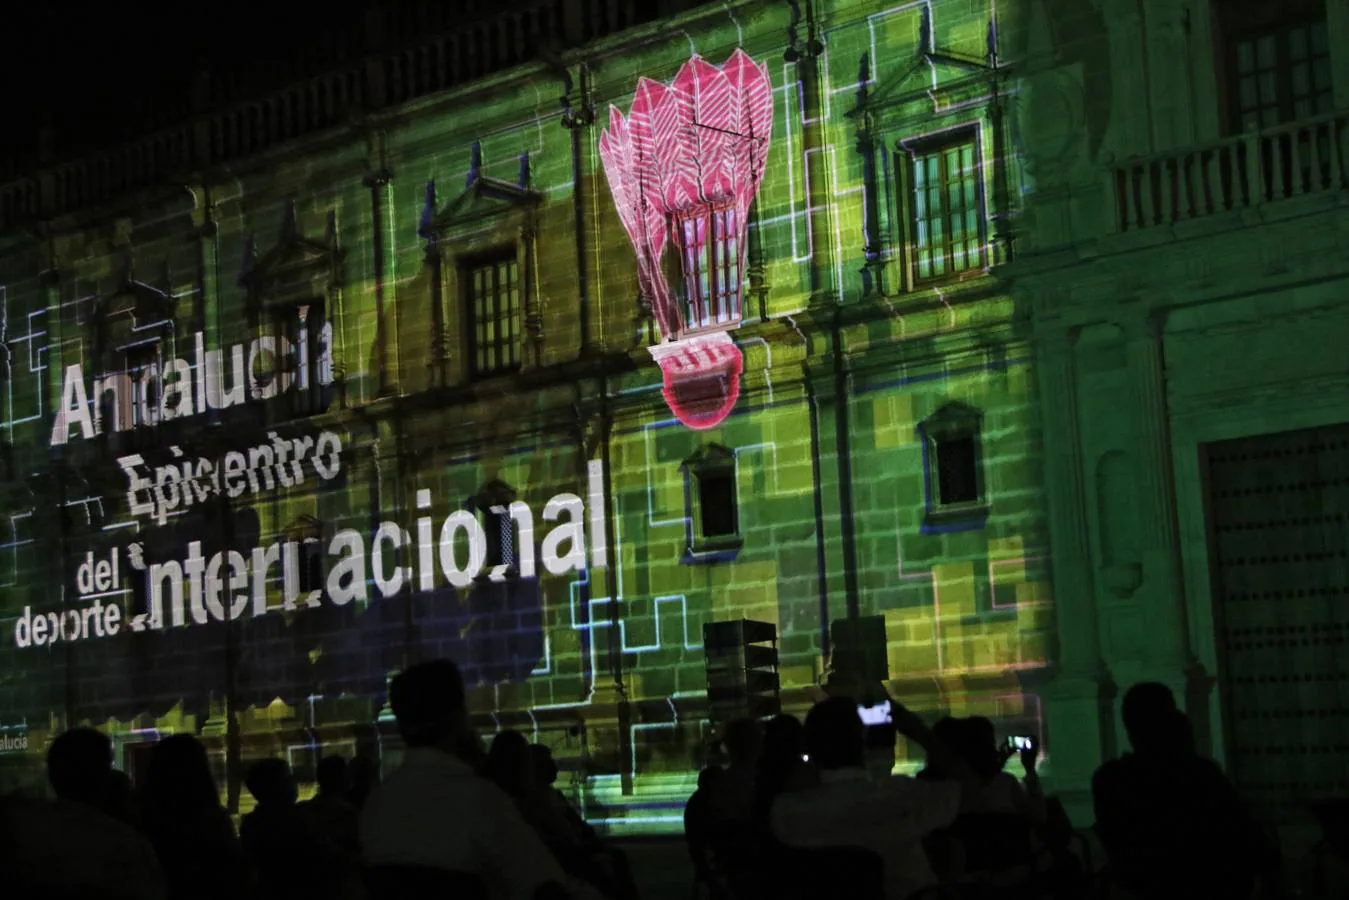 Eurocopa en Sevilla: espectáculo nocturno de luces de norte a sur de la ciudad